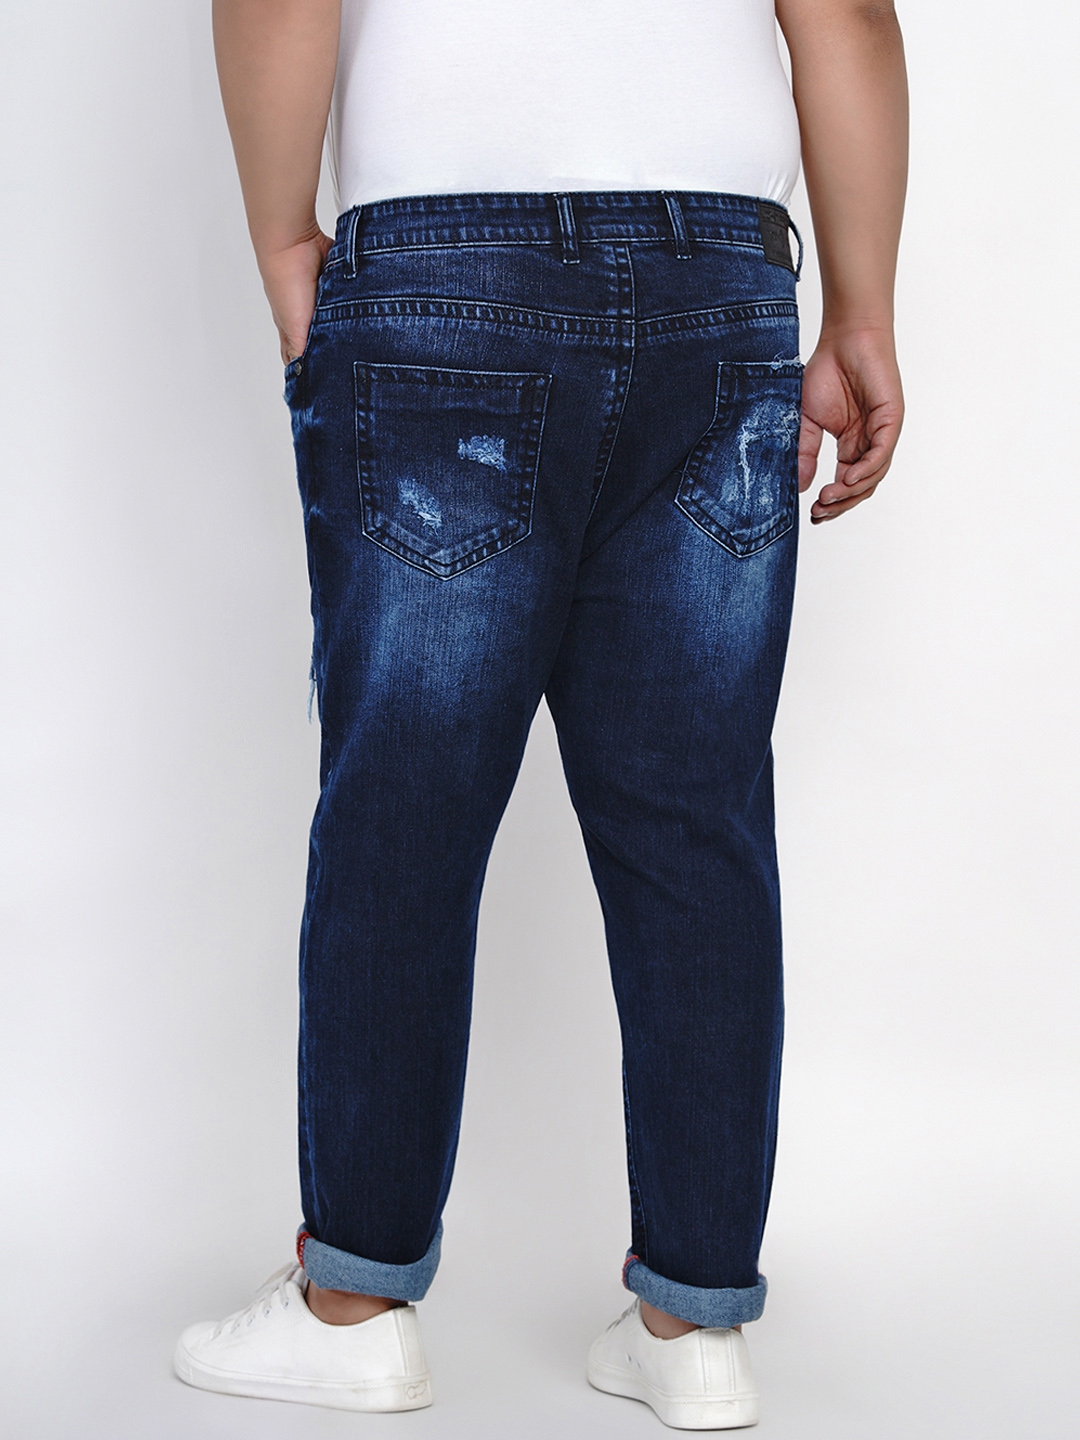 affordables/jeans/JPJ6001/jpj6001-5.jpg